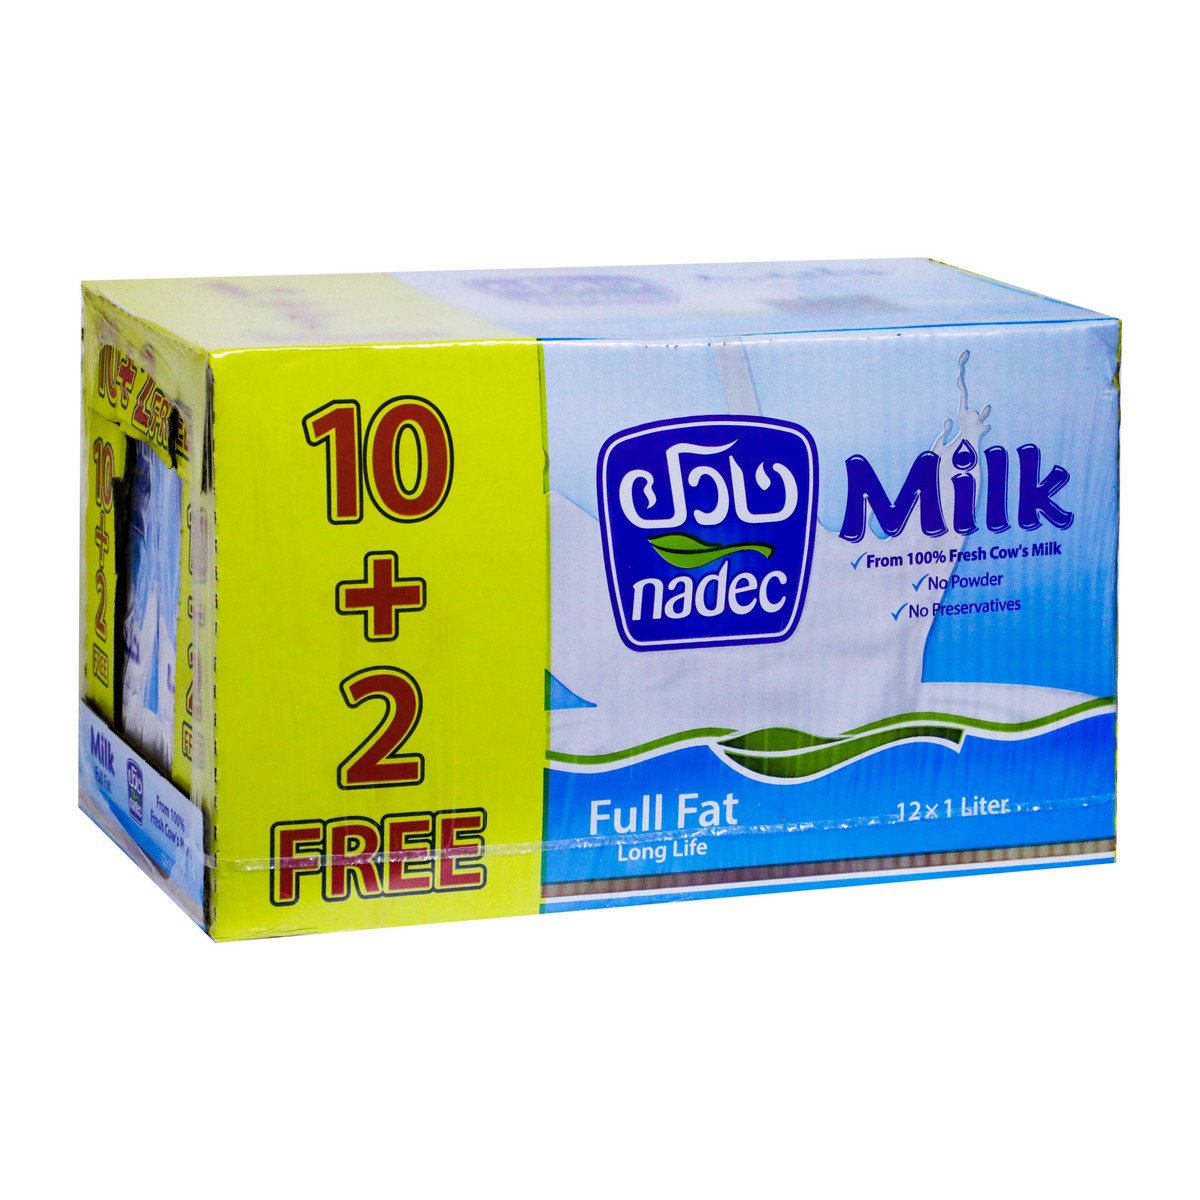 Nadec Long Life Full Fat Milk 12 x 1Litre